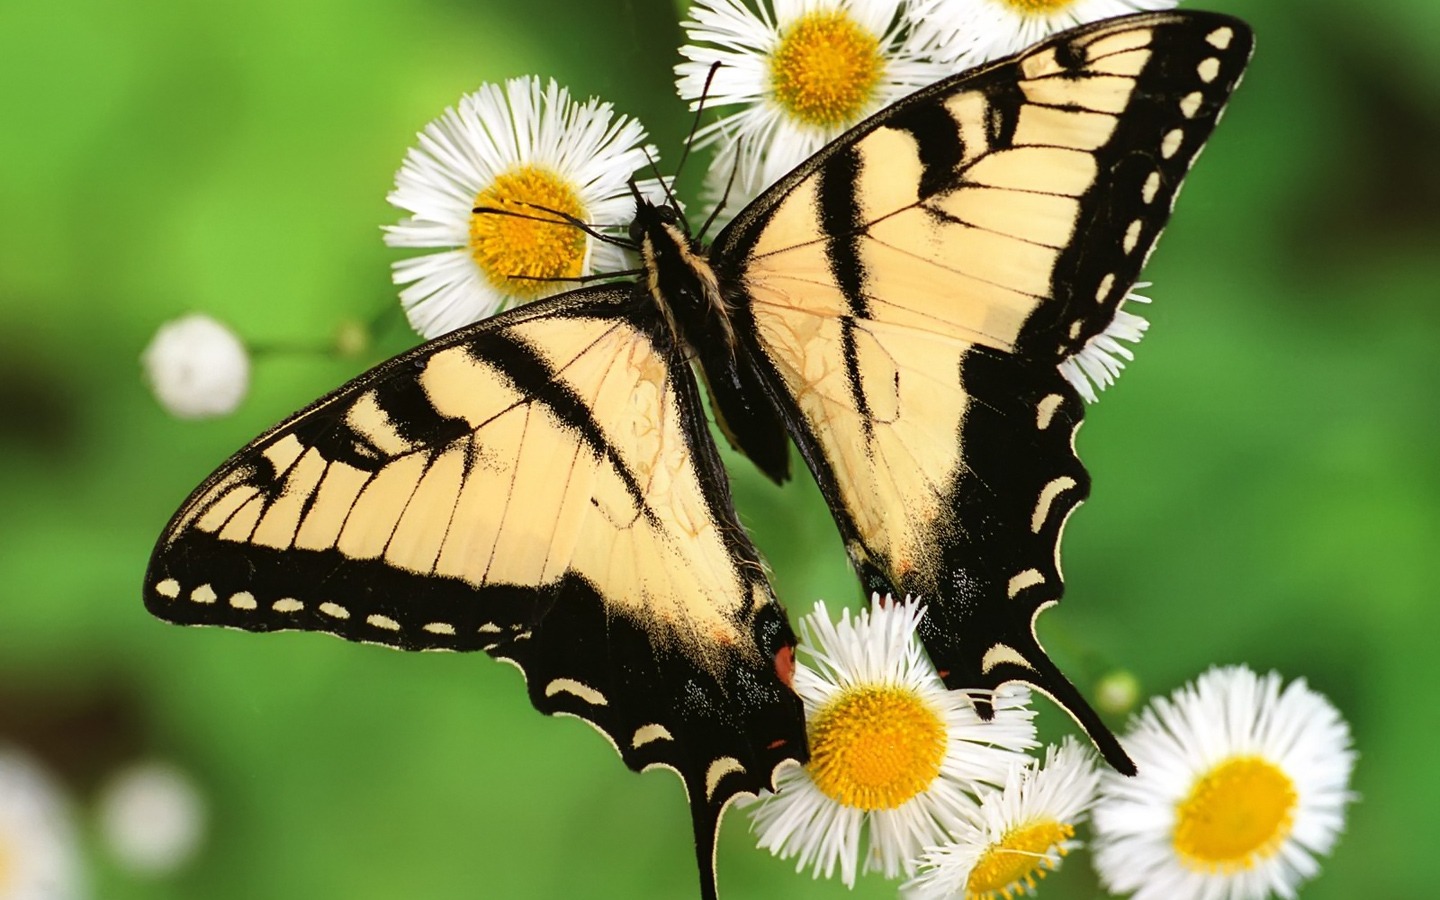 国外野生动物摄影师:高清晰像素温顺动物-昆虫蝴蝶壁纸图片欣赏